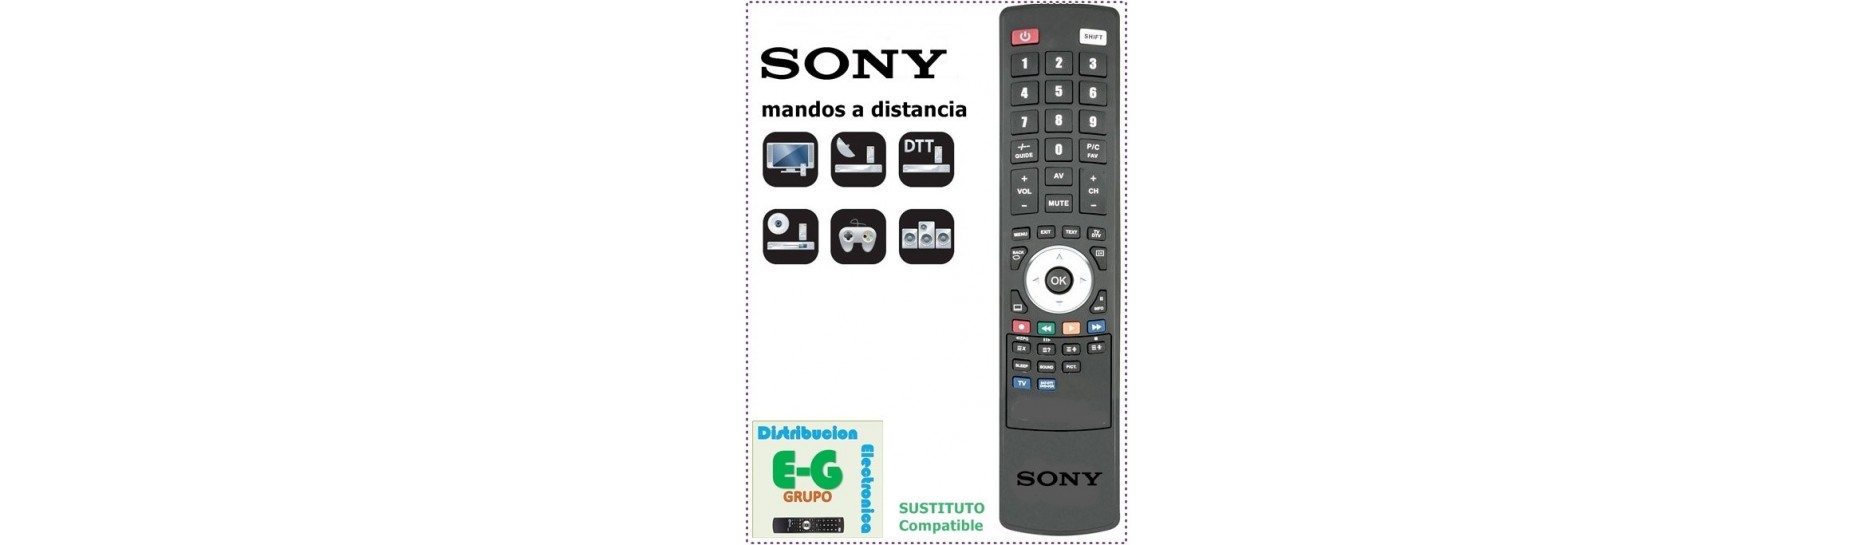 SONY Mandos para DVD e HIFI | Comprar Mando SONY para DVD e HIFI